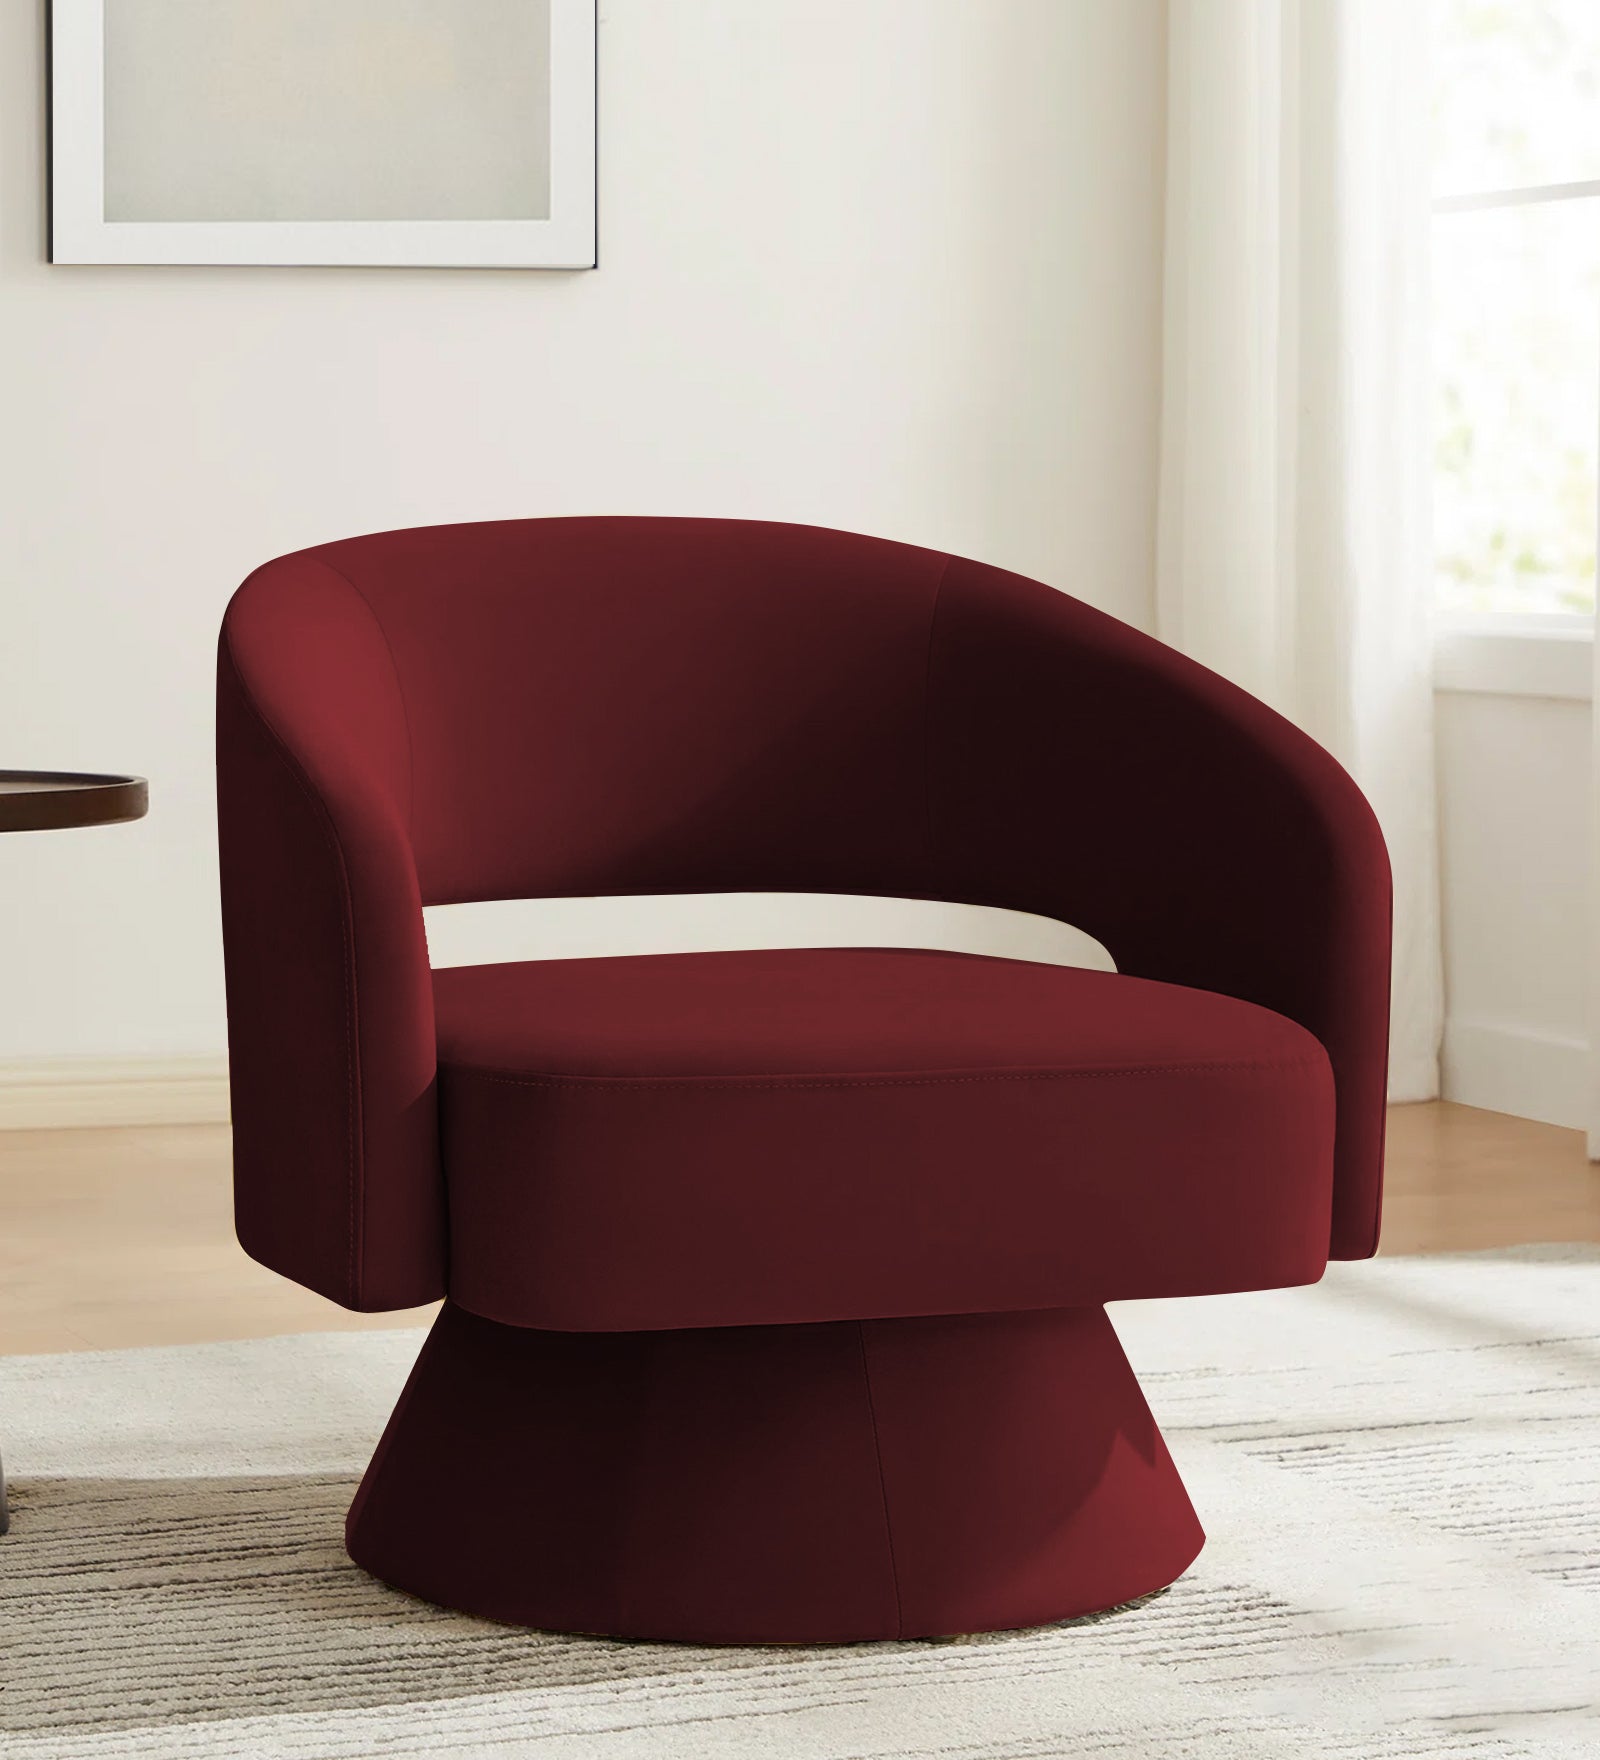 Pendra Velvet Swivel Chair in Blood Maroon Colour